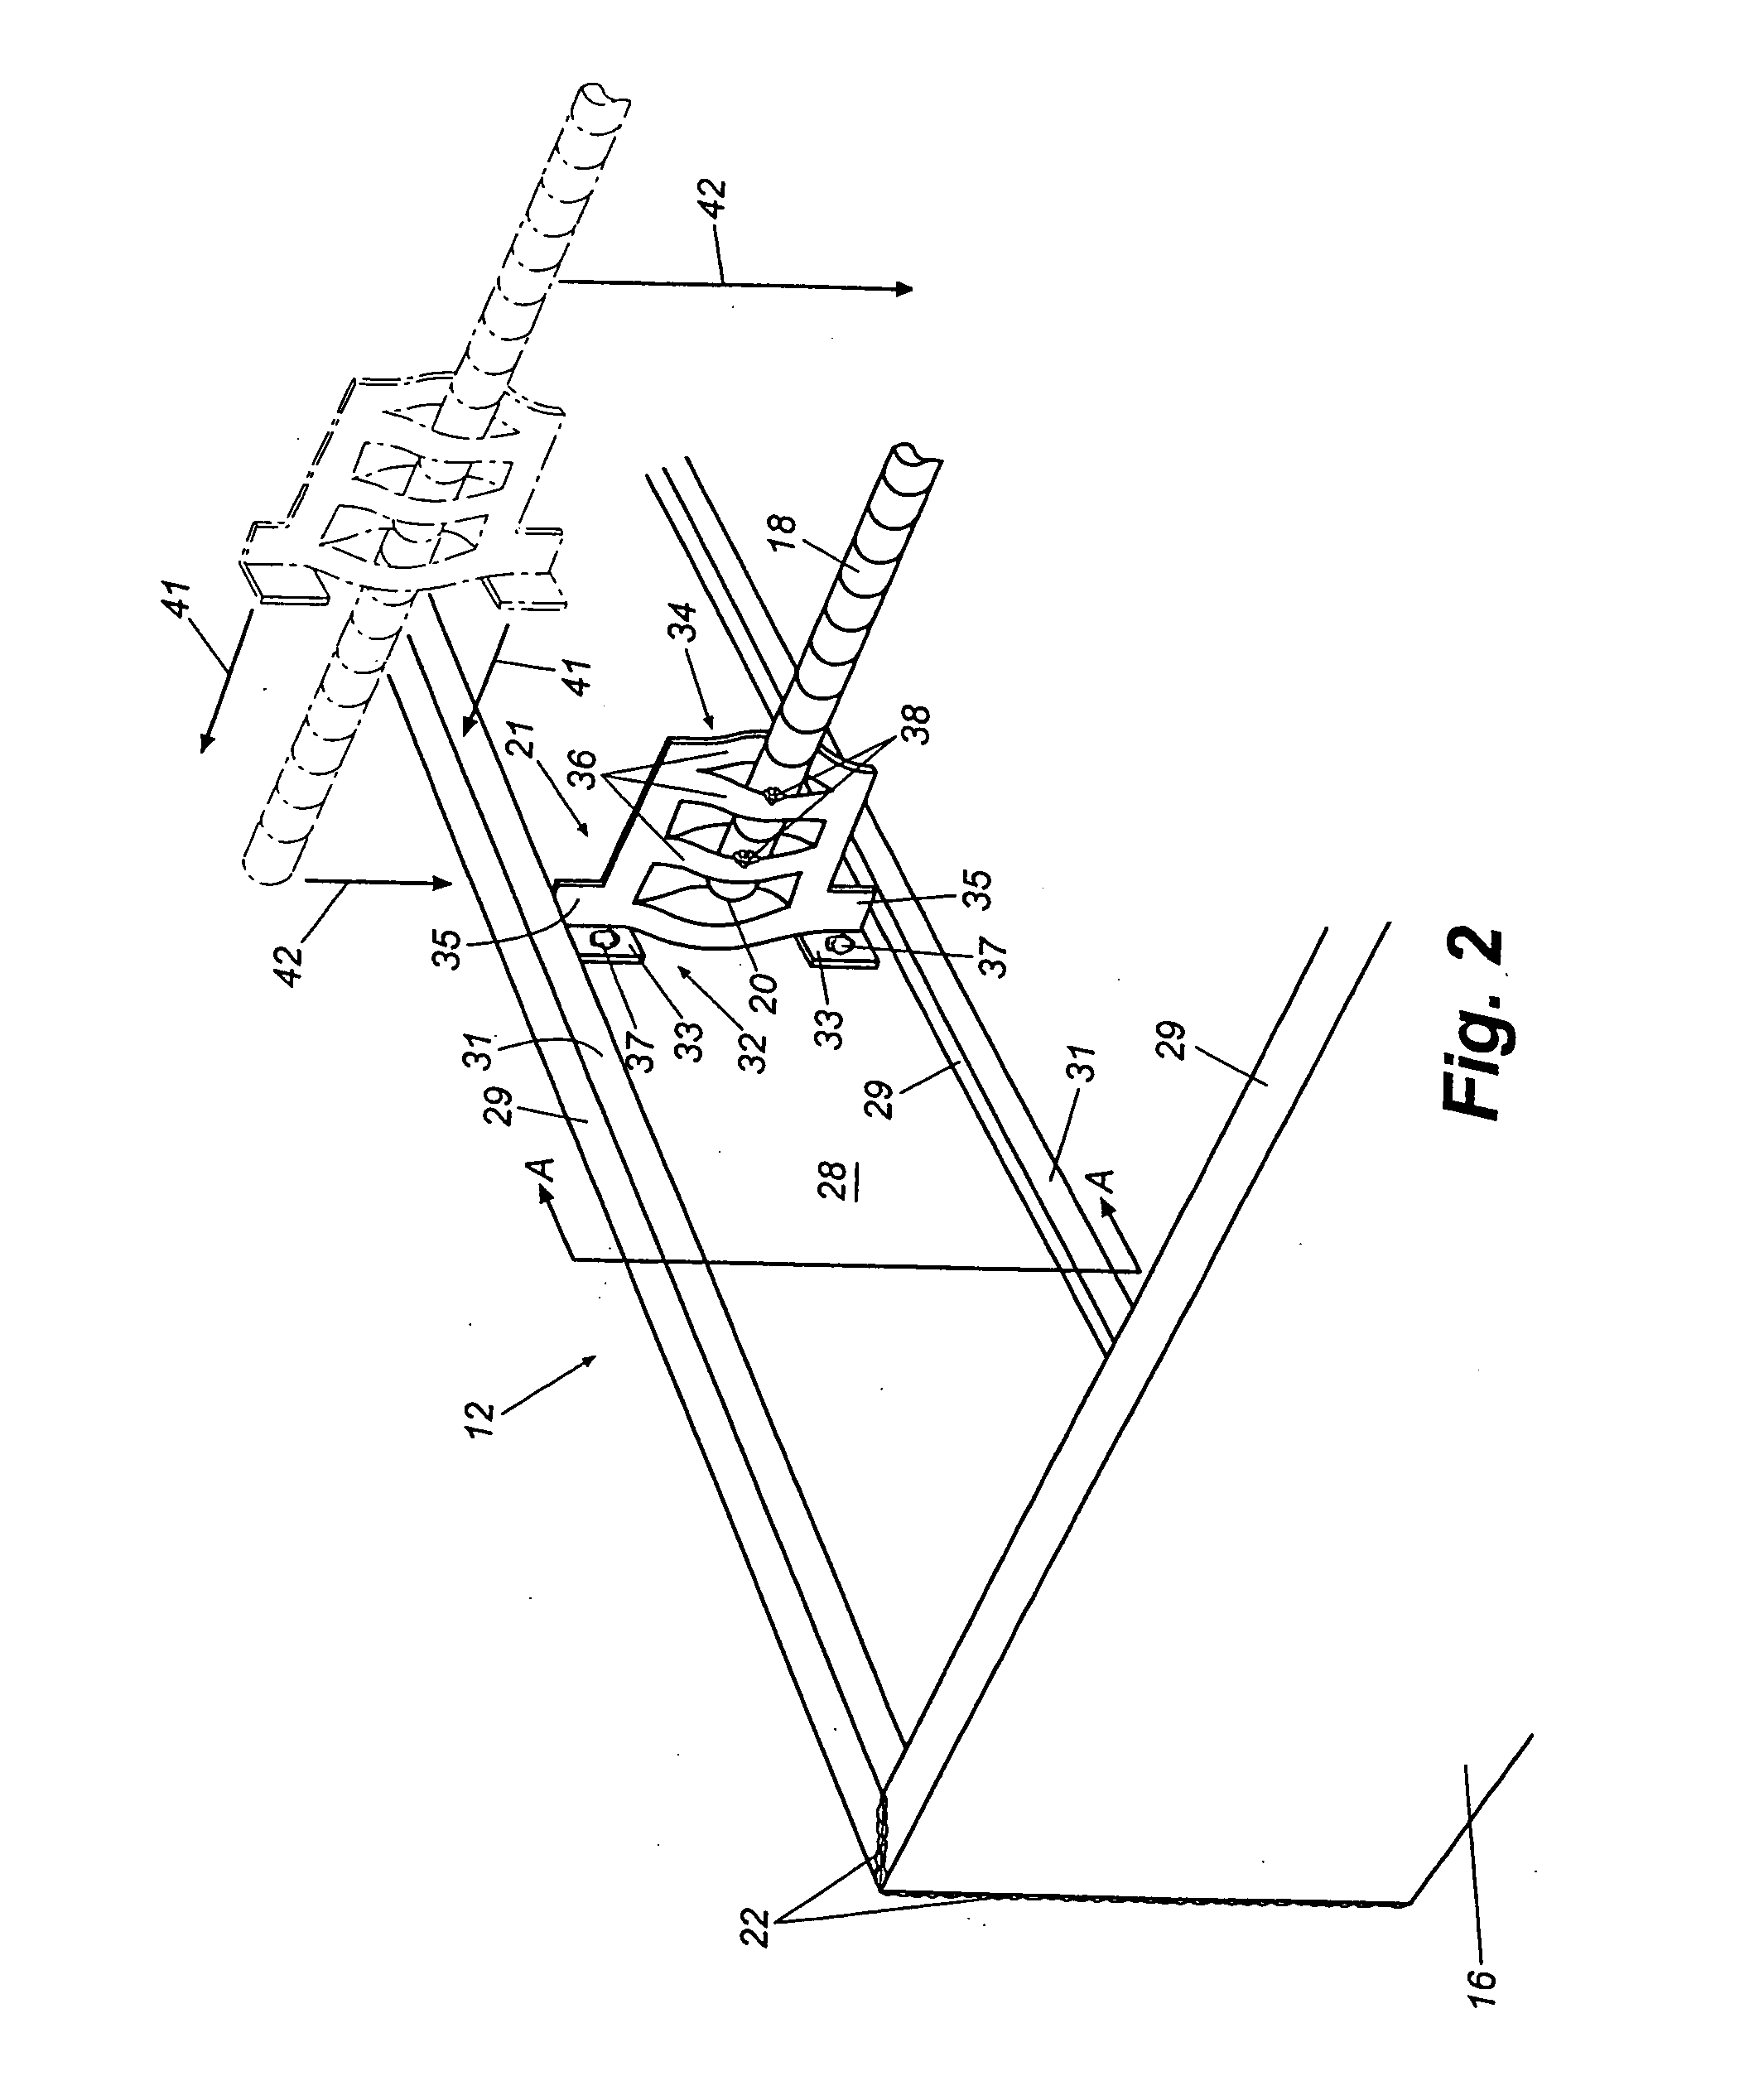 Tilt-up anchor and anchor pocket form